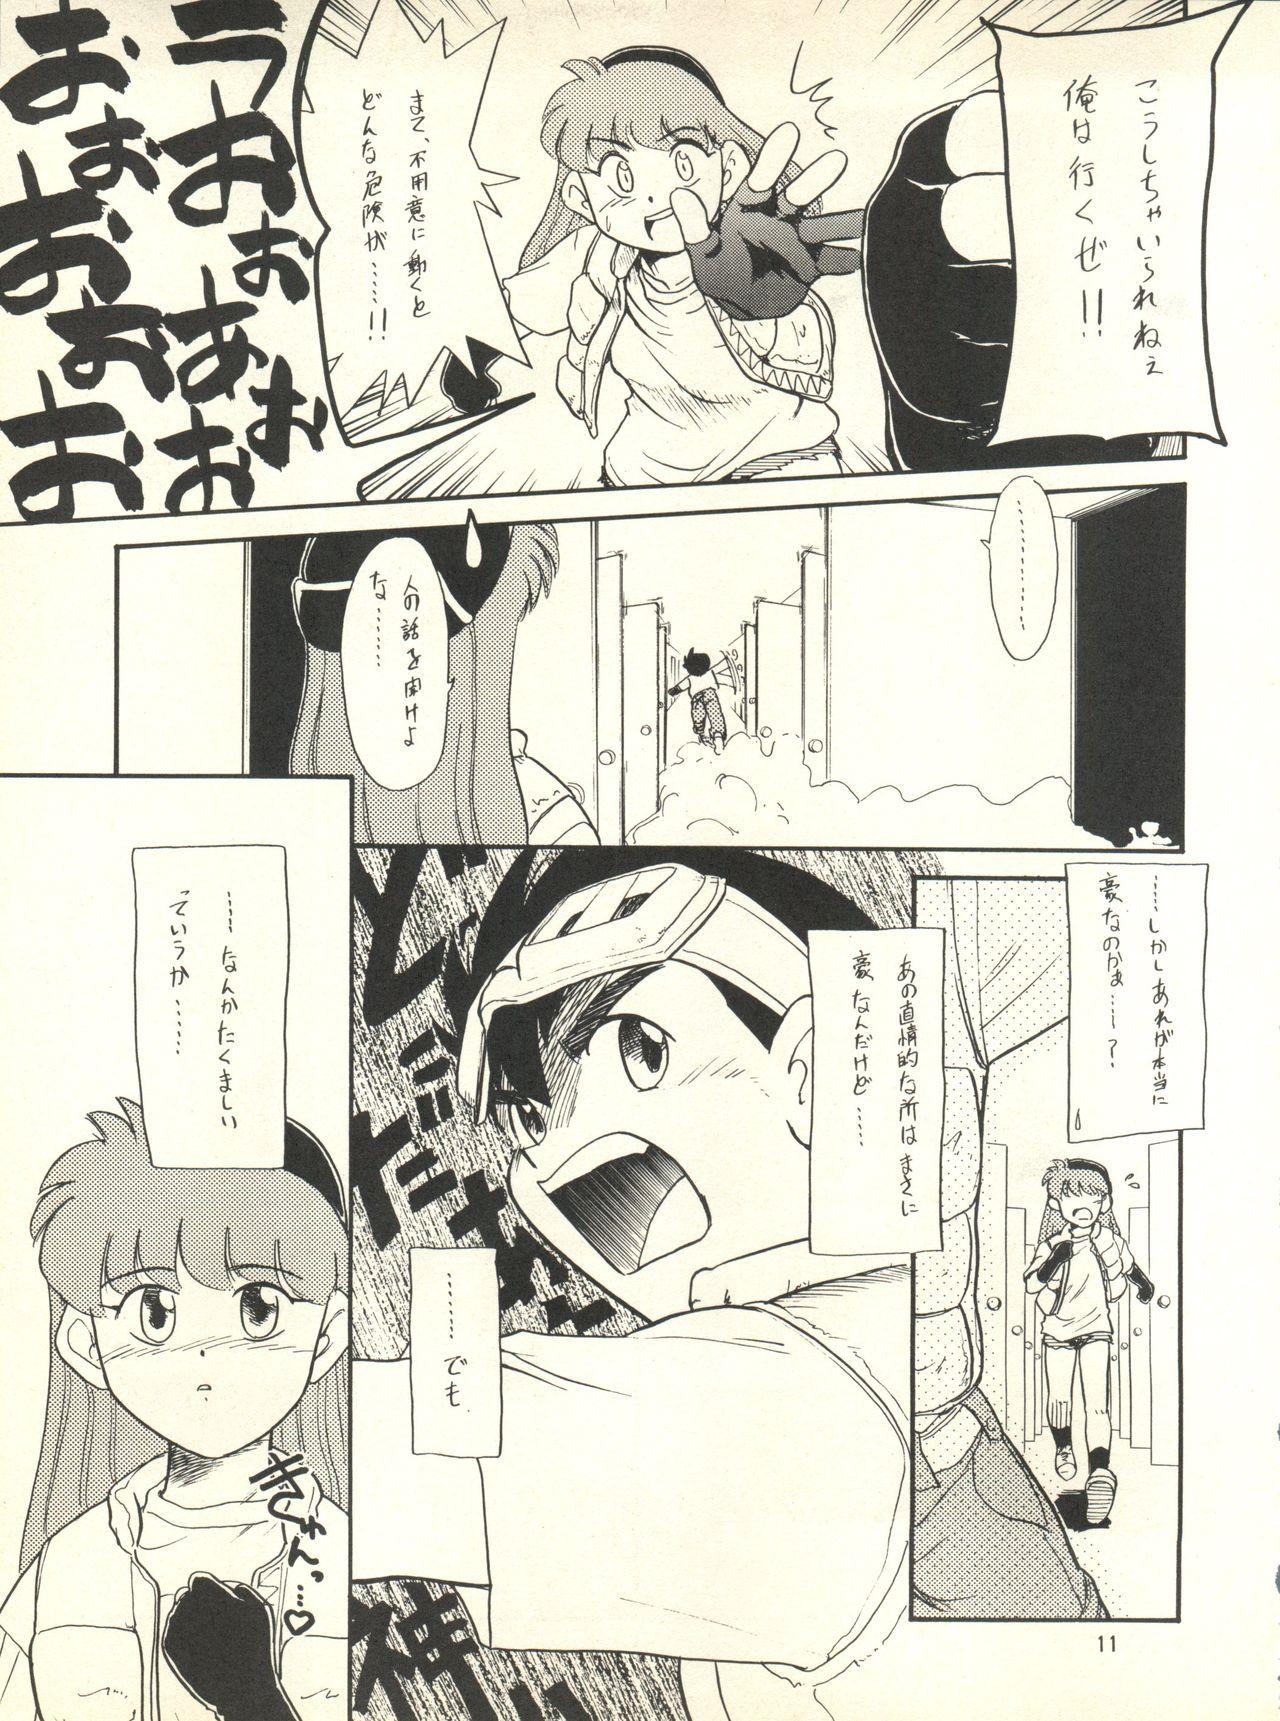 Friends Nana-chan Kikiippatsu - Bakusou kyoudai lets and go Mms - Page 11